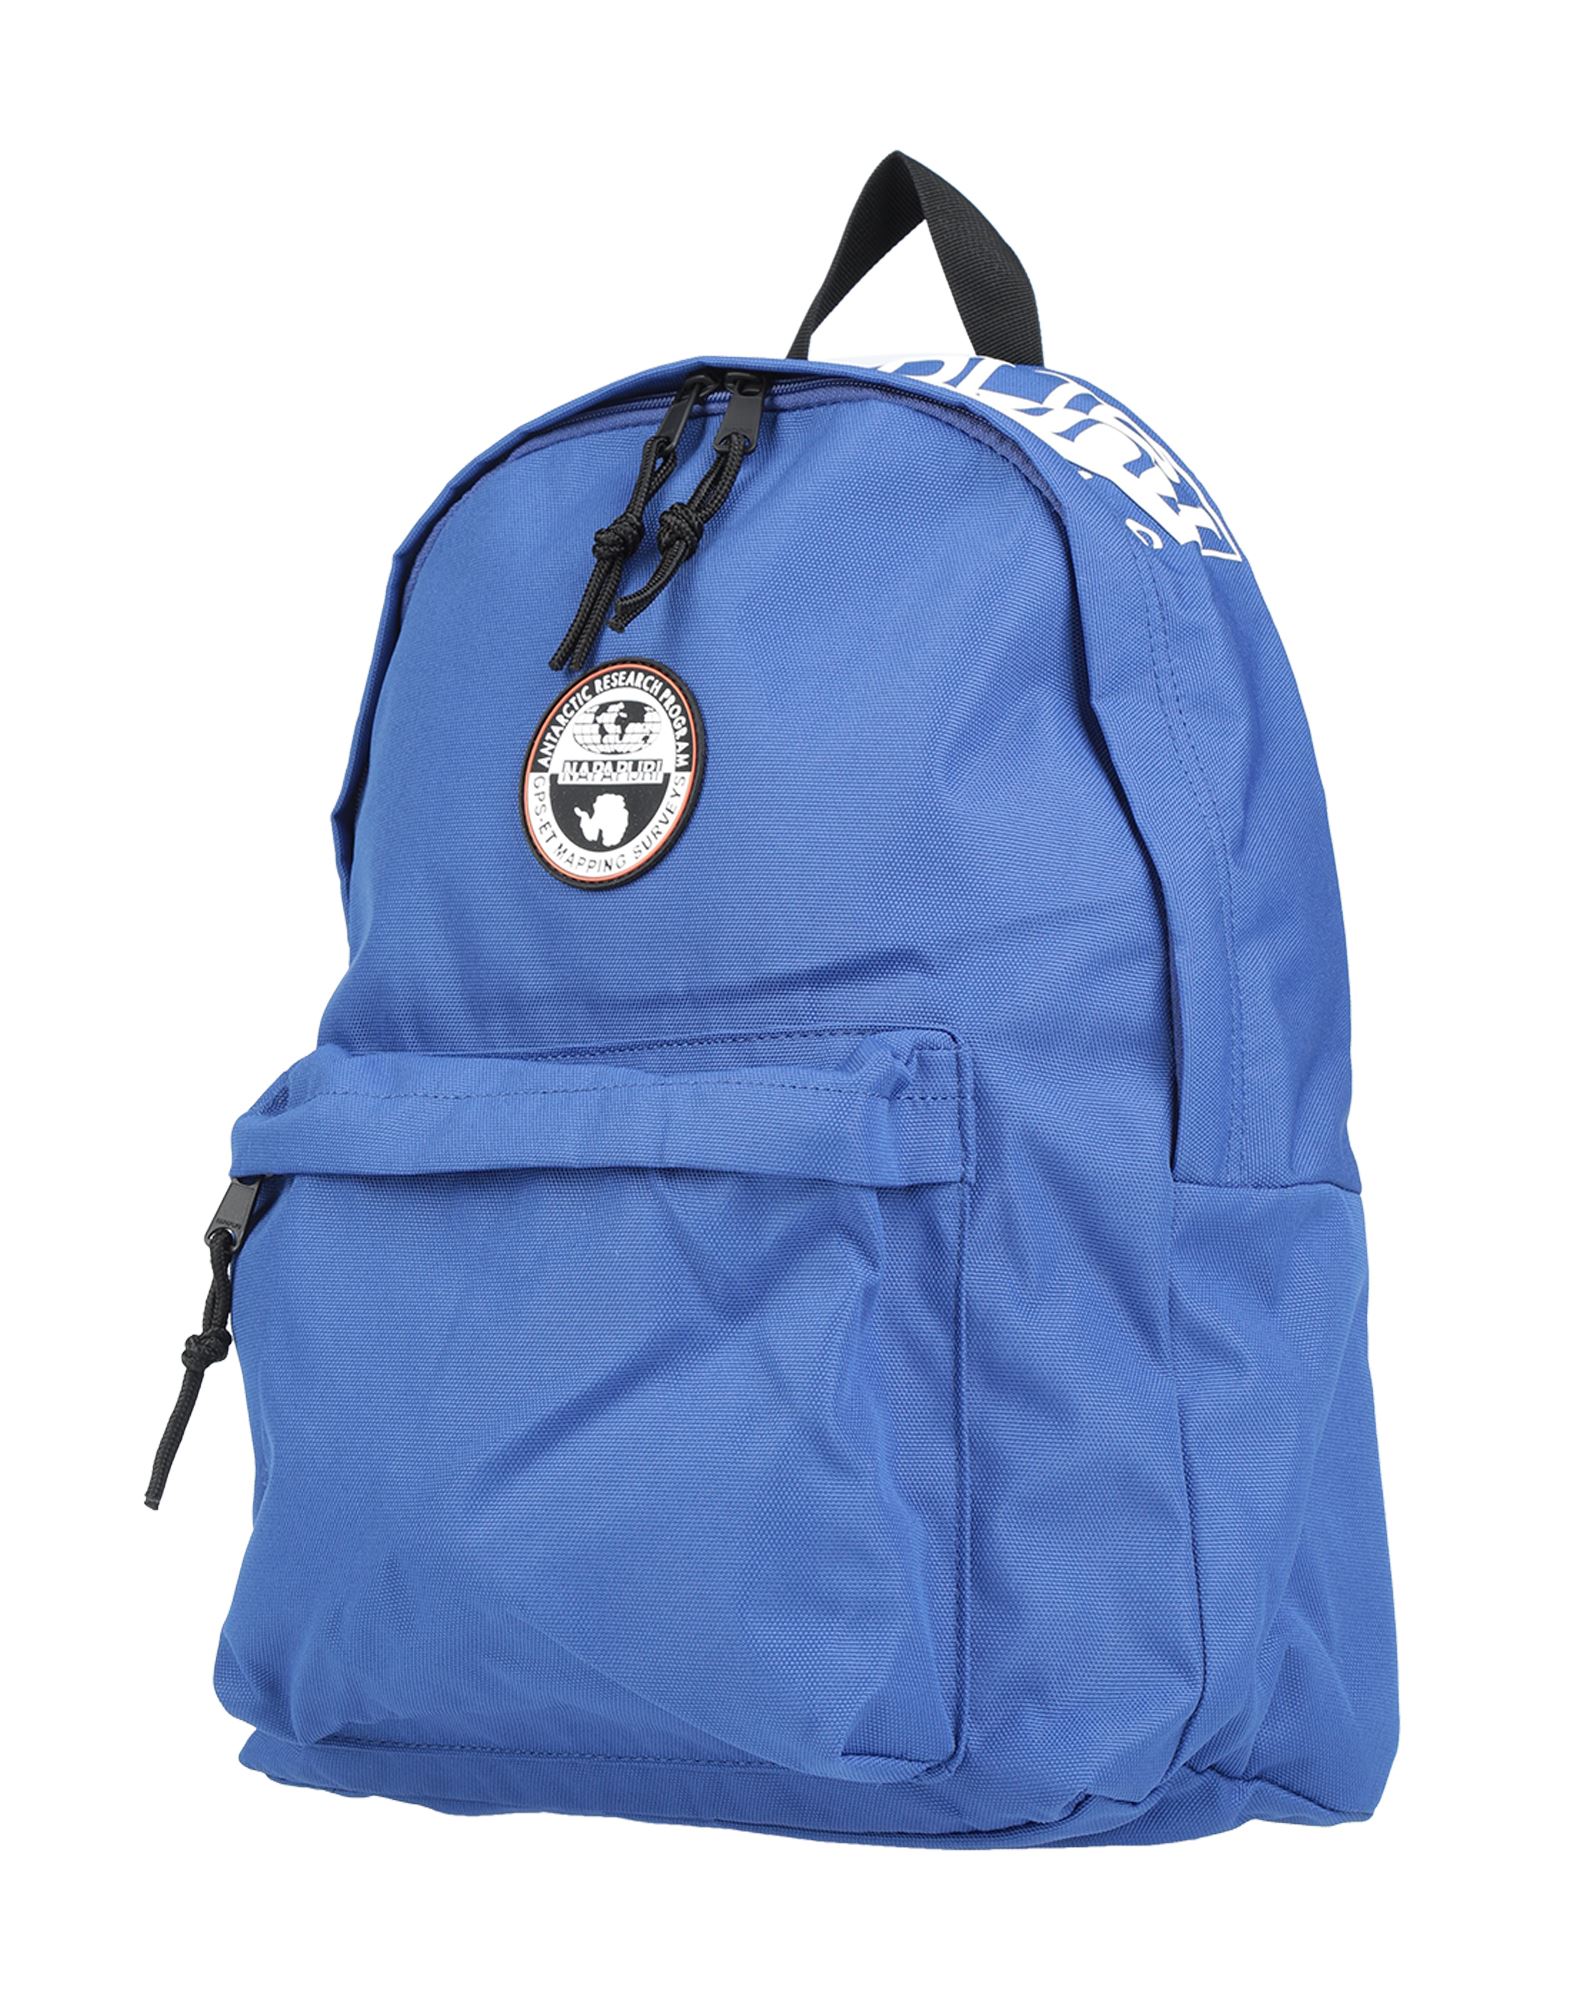 Napapijri Backpacks In Bright Blue